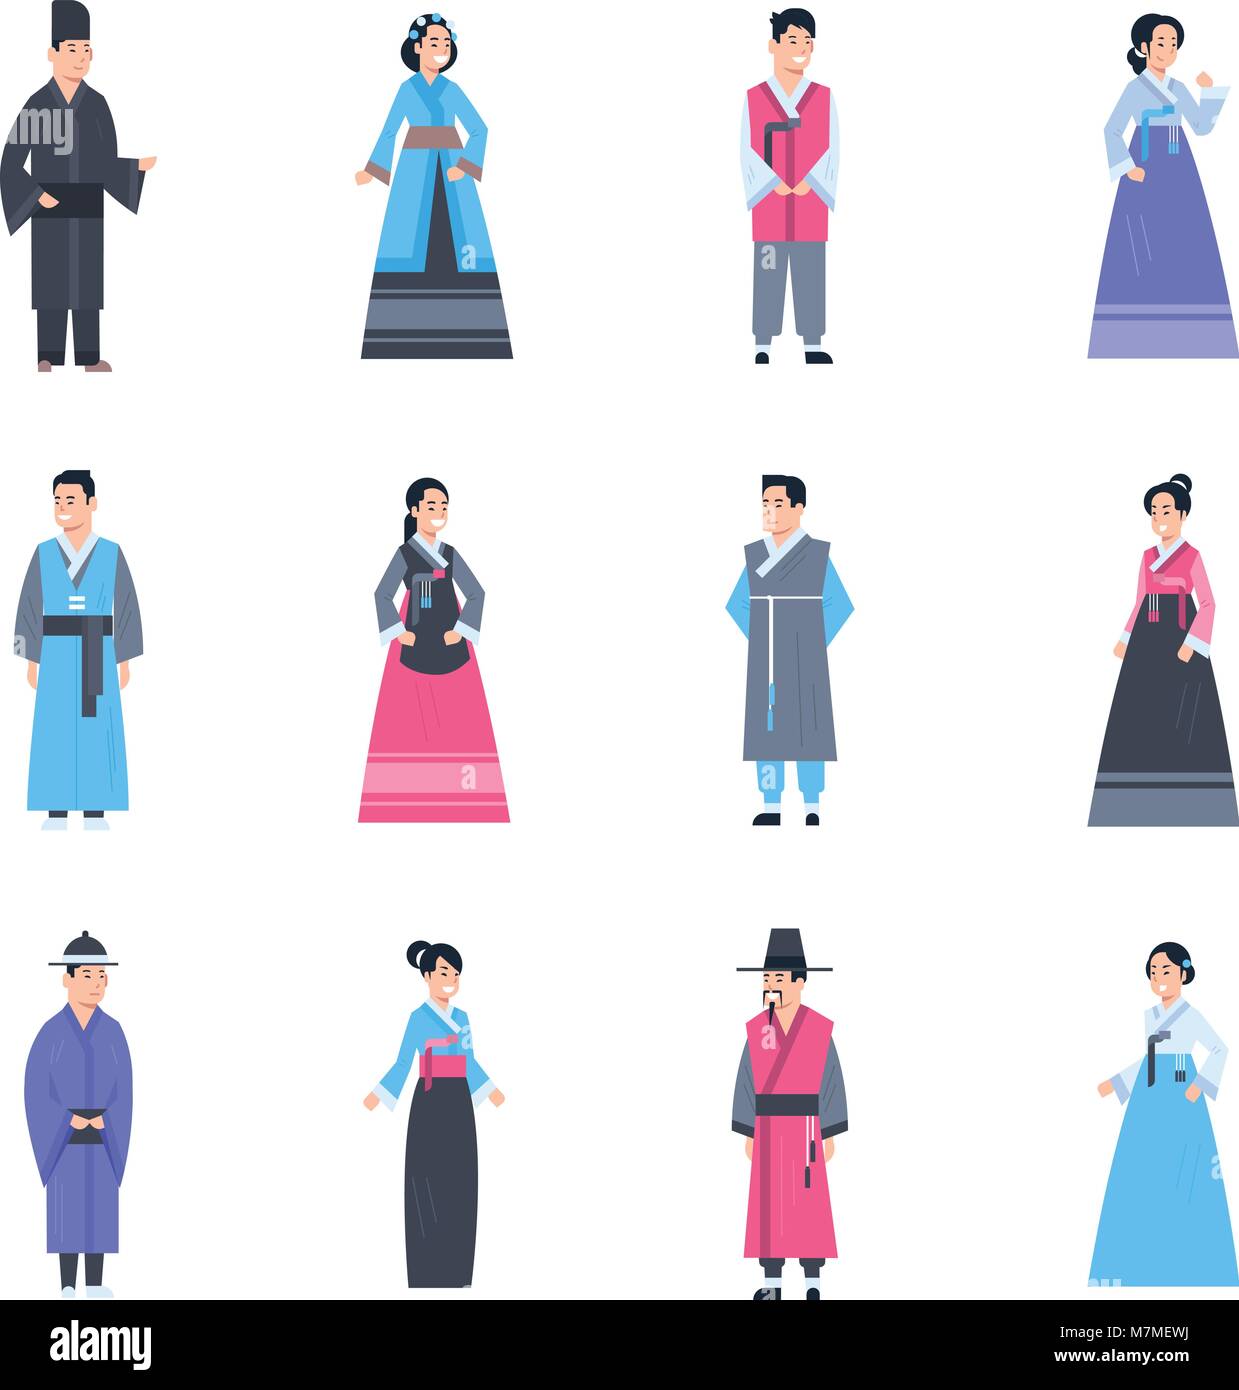 Corea abiti tradizionali serie di donne e uomini che indossano il costume antico isolato Asian Dress Collection Illustrazione Vettoriale